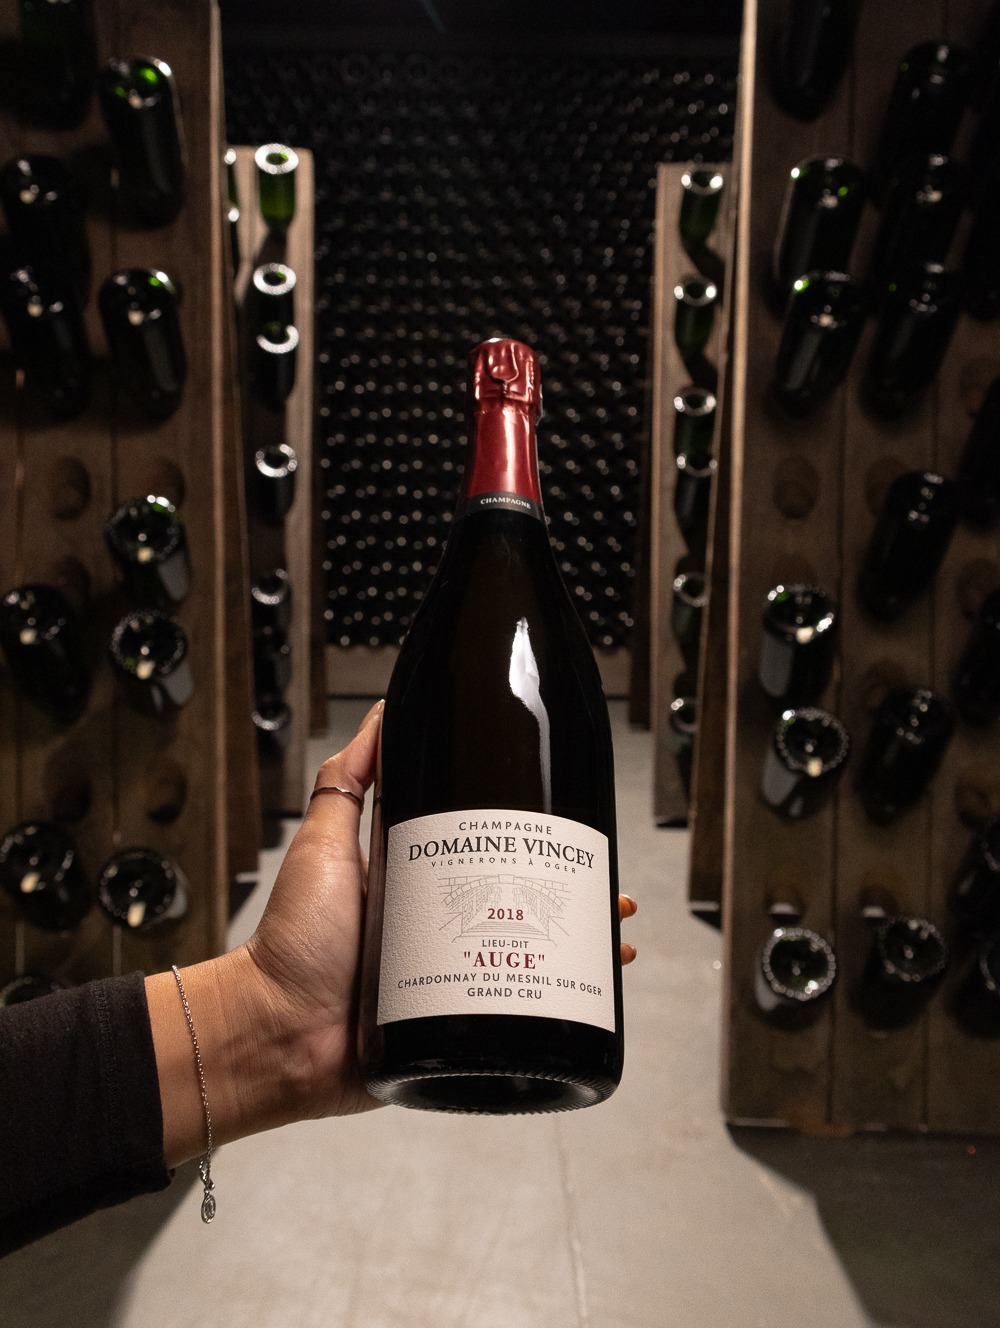 Champagne Domaine Vincey Chardonnay du Mesnil-Sur-Oger Auge Brut Nature Grand Cru 2018